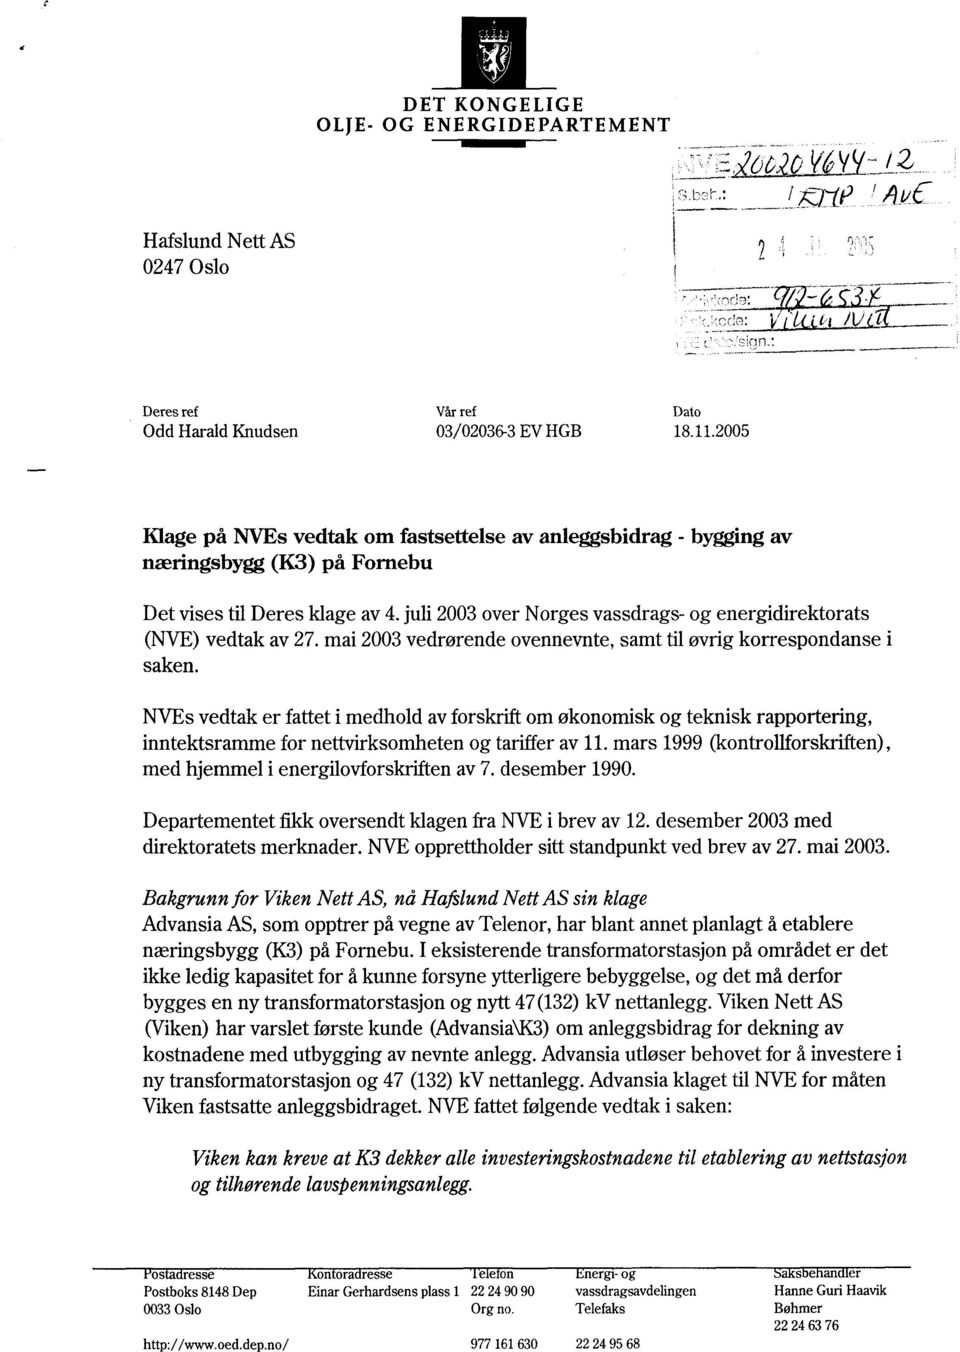 juli 2003 over Norges vassdrags- og energidirektorats (NVE) vedtak av 27. mai 2003 vedrørende ovennevnte, samt til øvrig korrespondanse i saken.